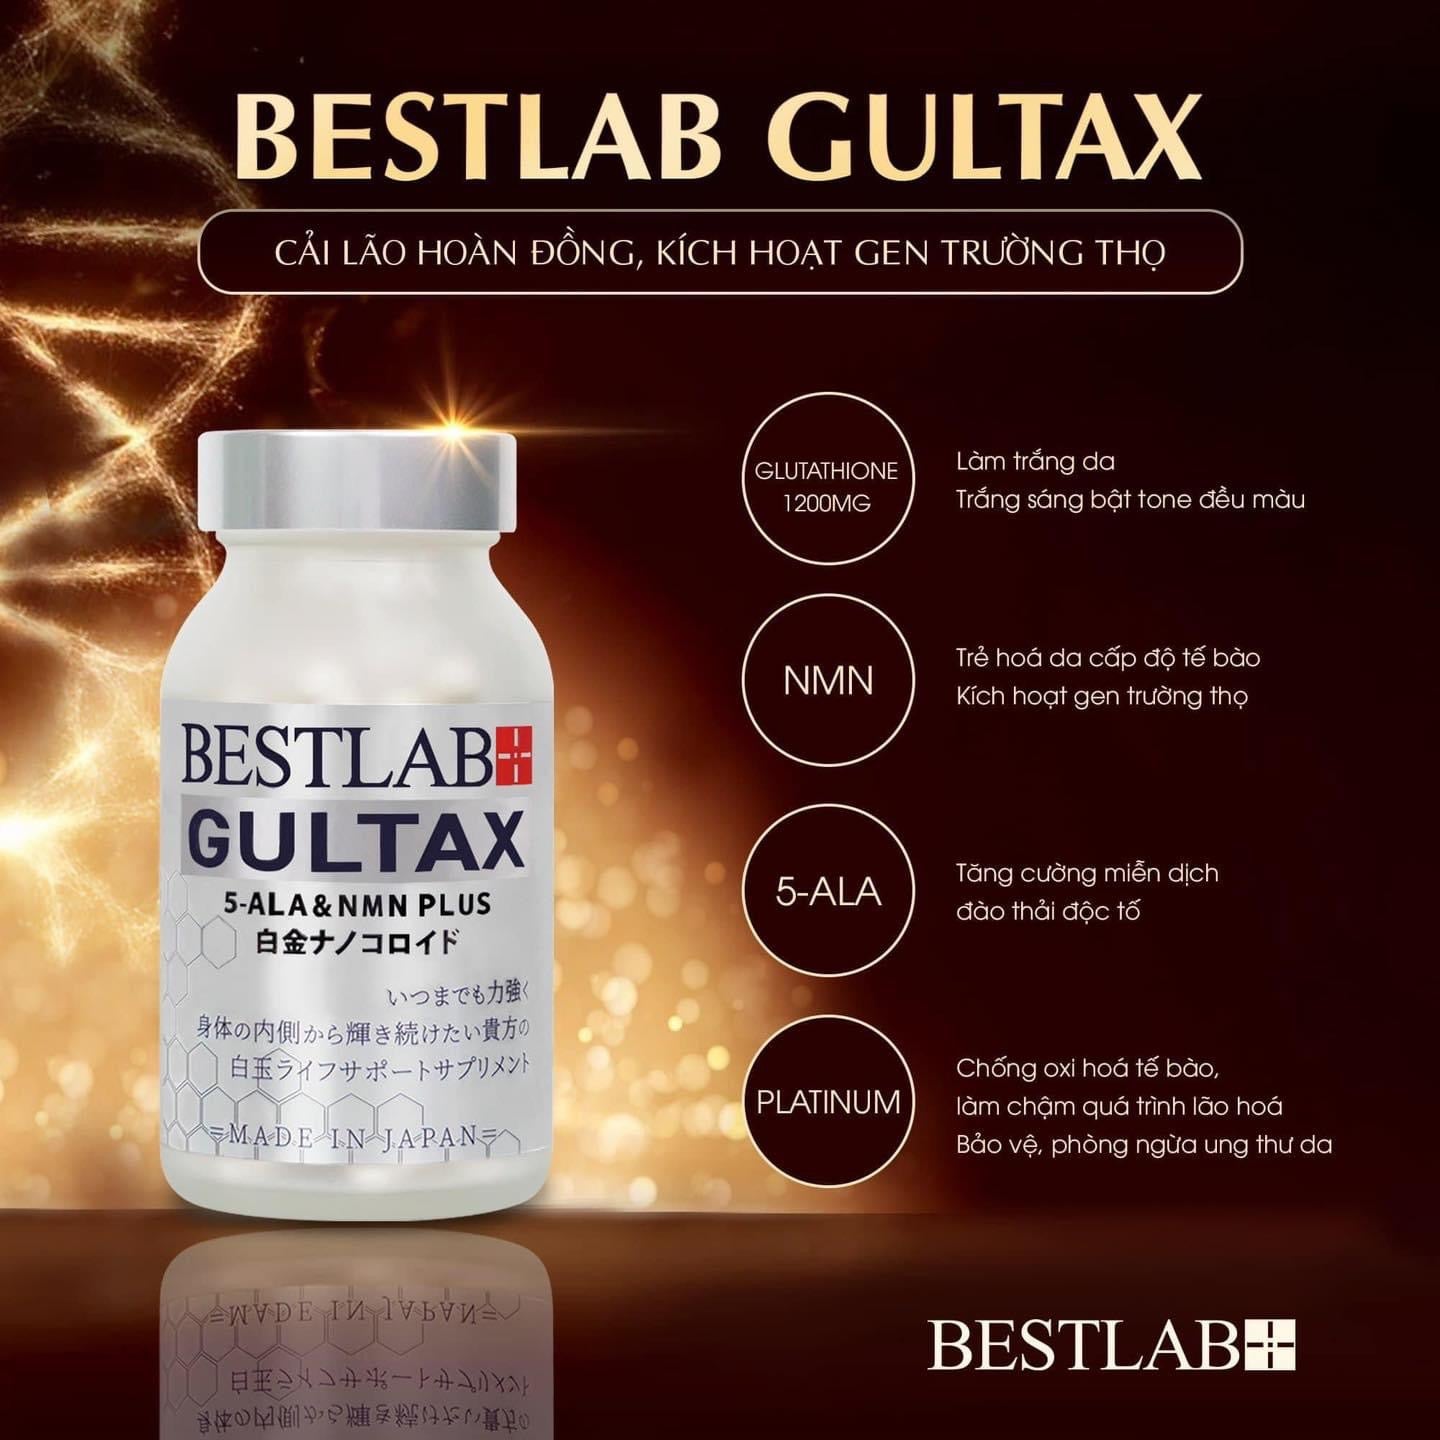 Bestlab Gultax